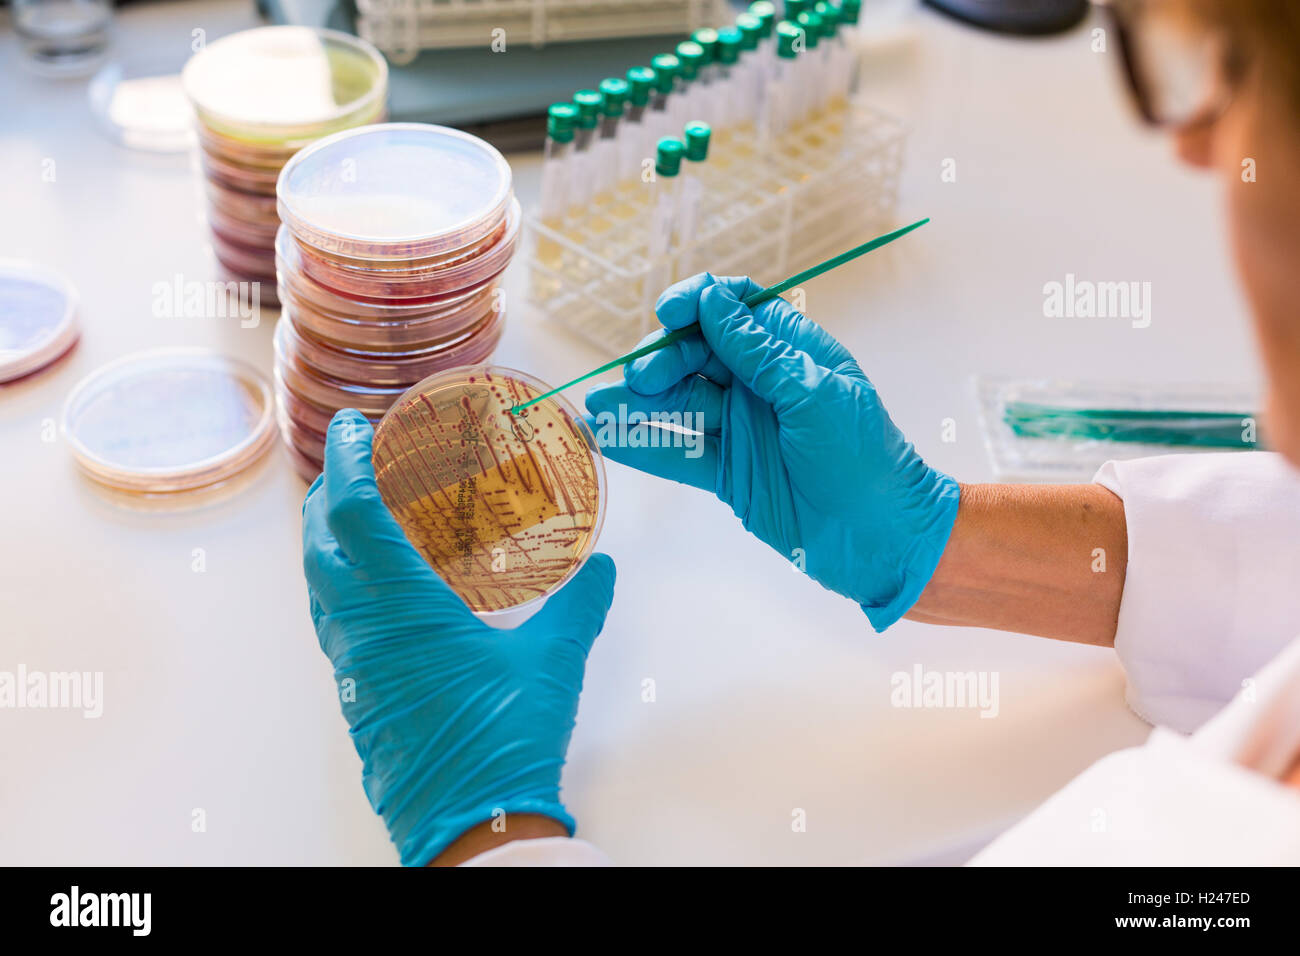 Mani di una piastra di coltura il test per la presenza di batteri Escherichia coli guardando la resistenza agli antibiotici. Foto Stock